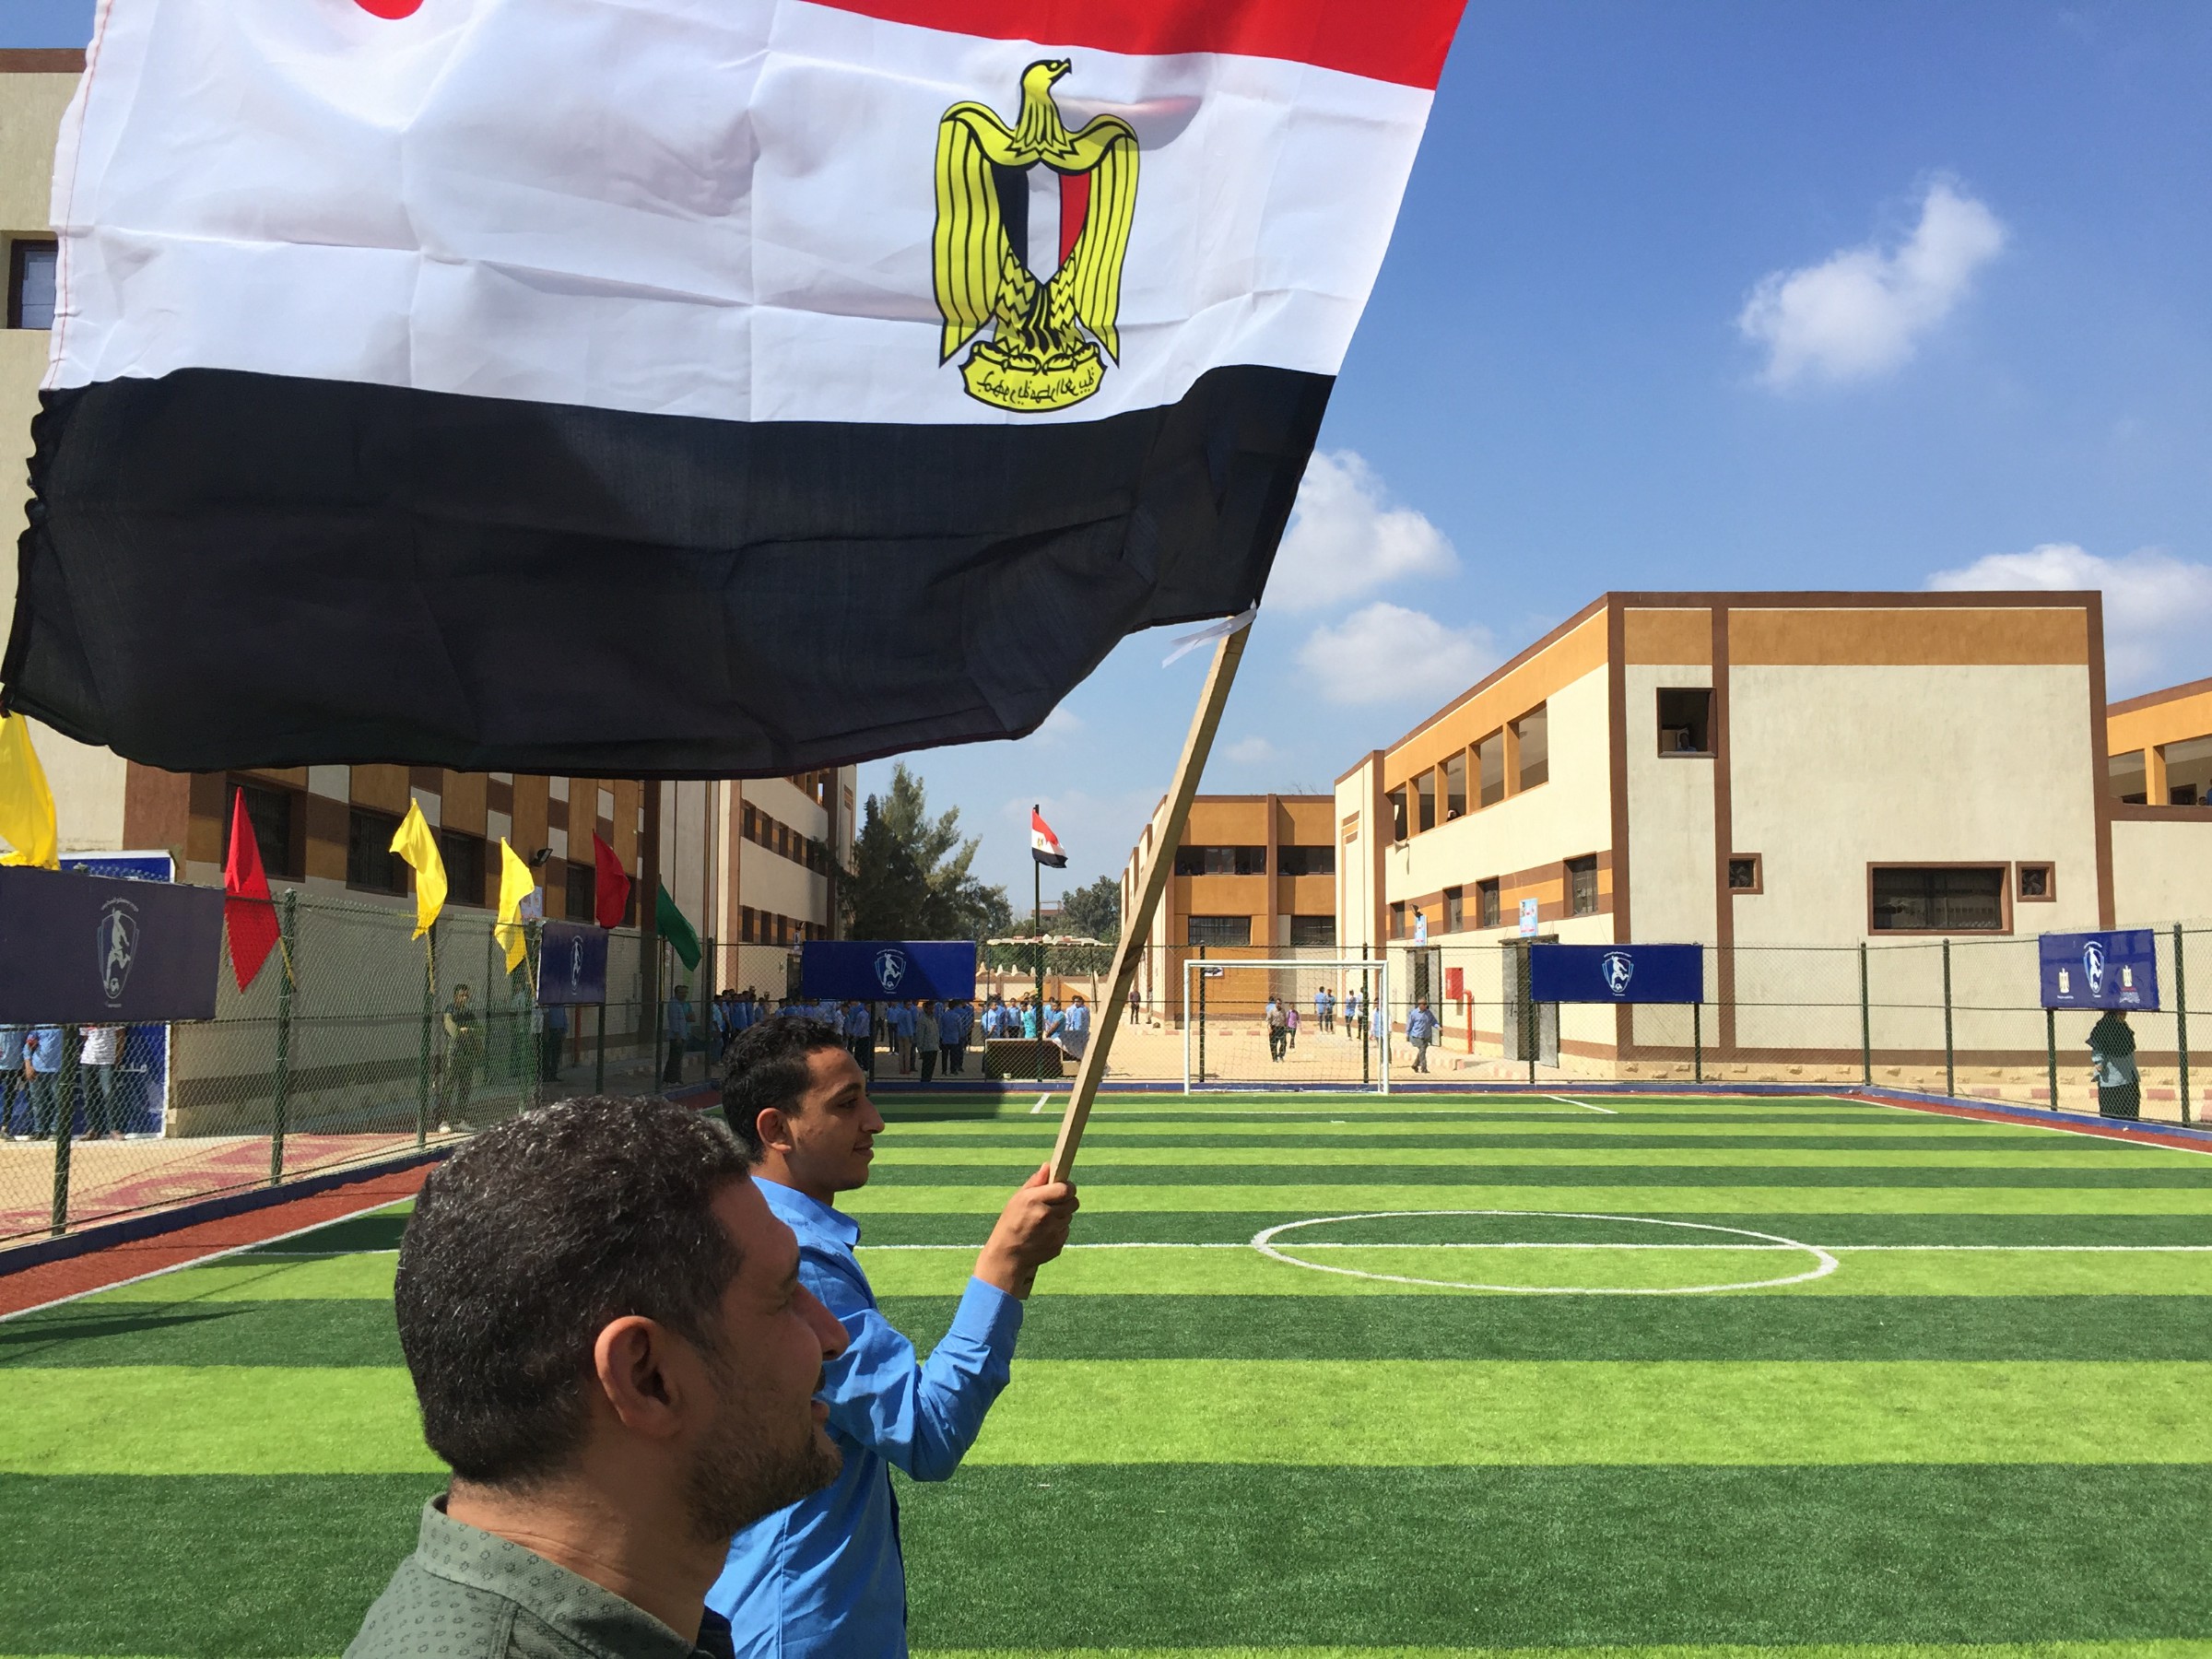 طلاب المدرسة يرفعون علم مصر